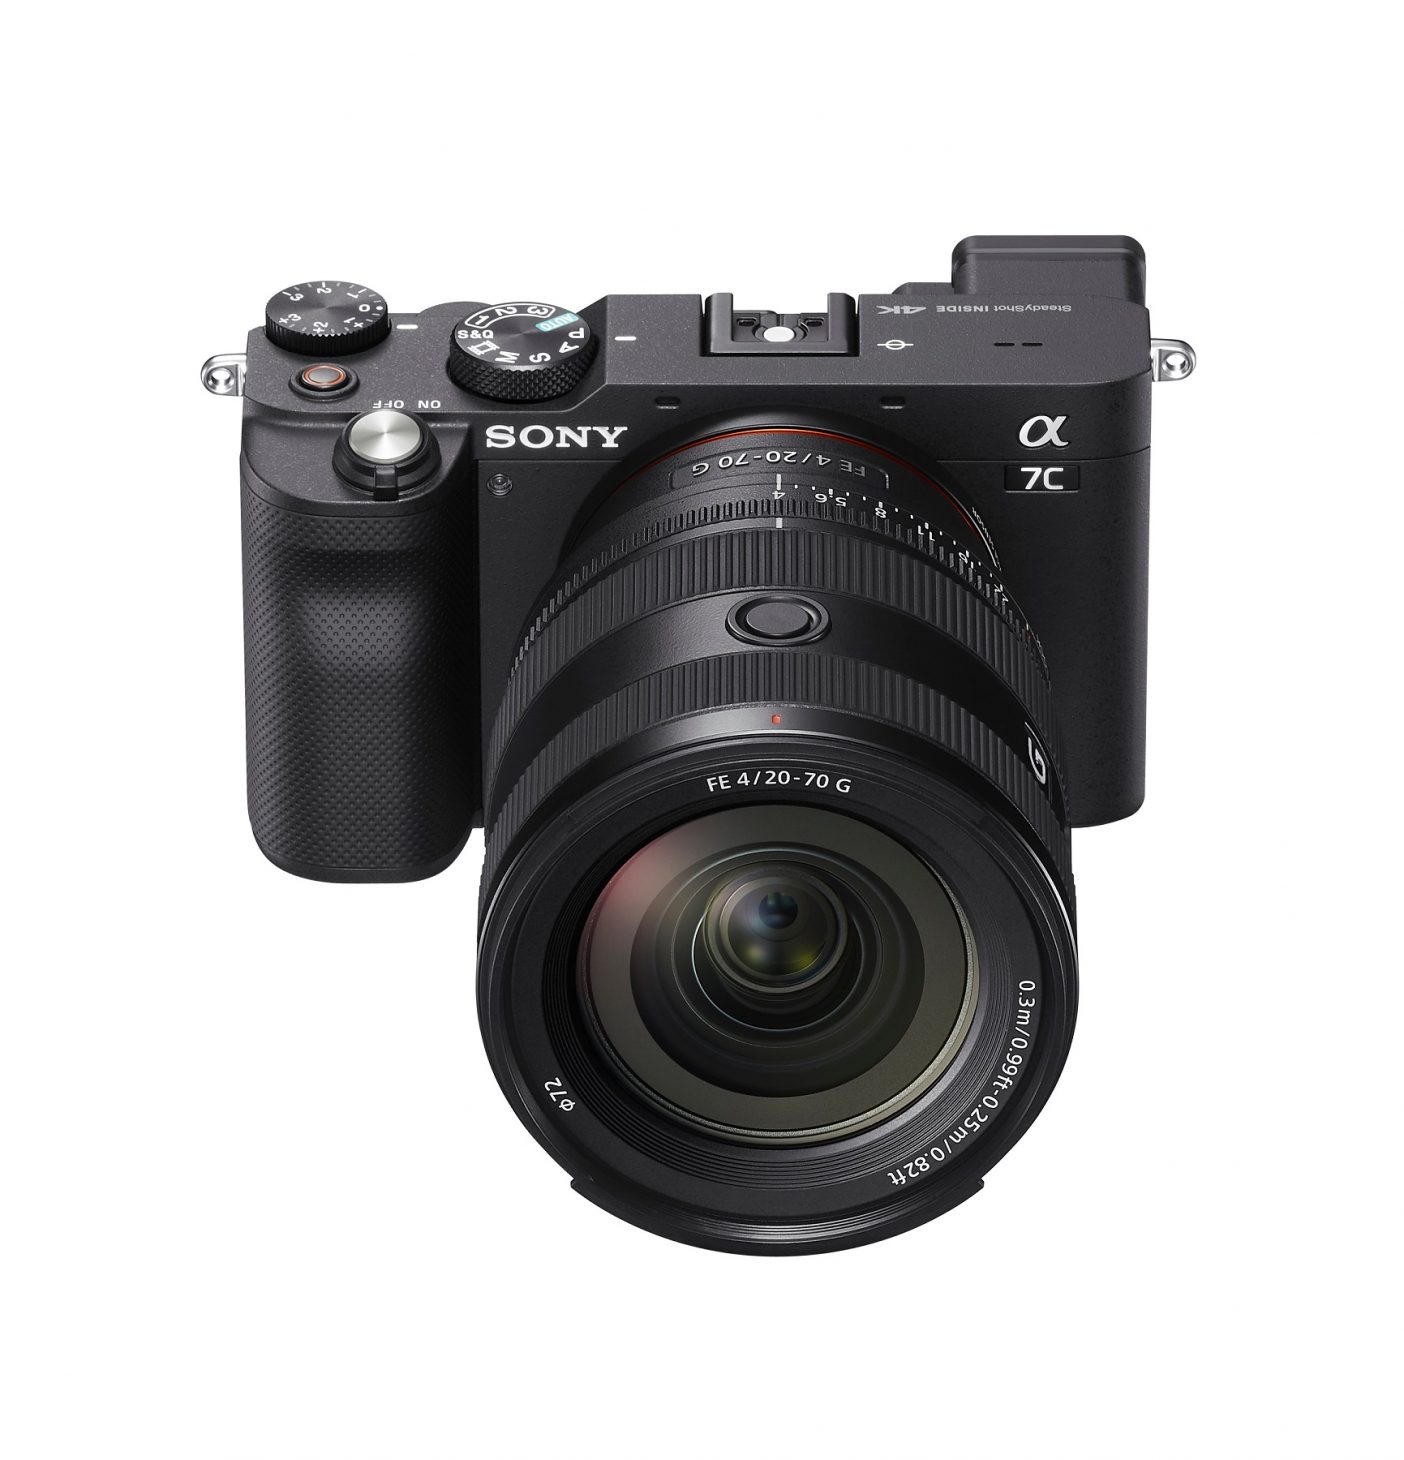 Sony ra mắt ống kính FE 20-70mm F4 G, gọn nhẹ cho góc siêu rộng - 8 ILCE 7C VX8030 front top Large